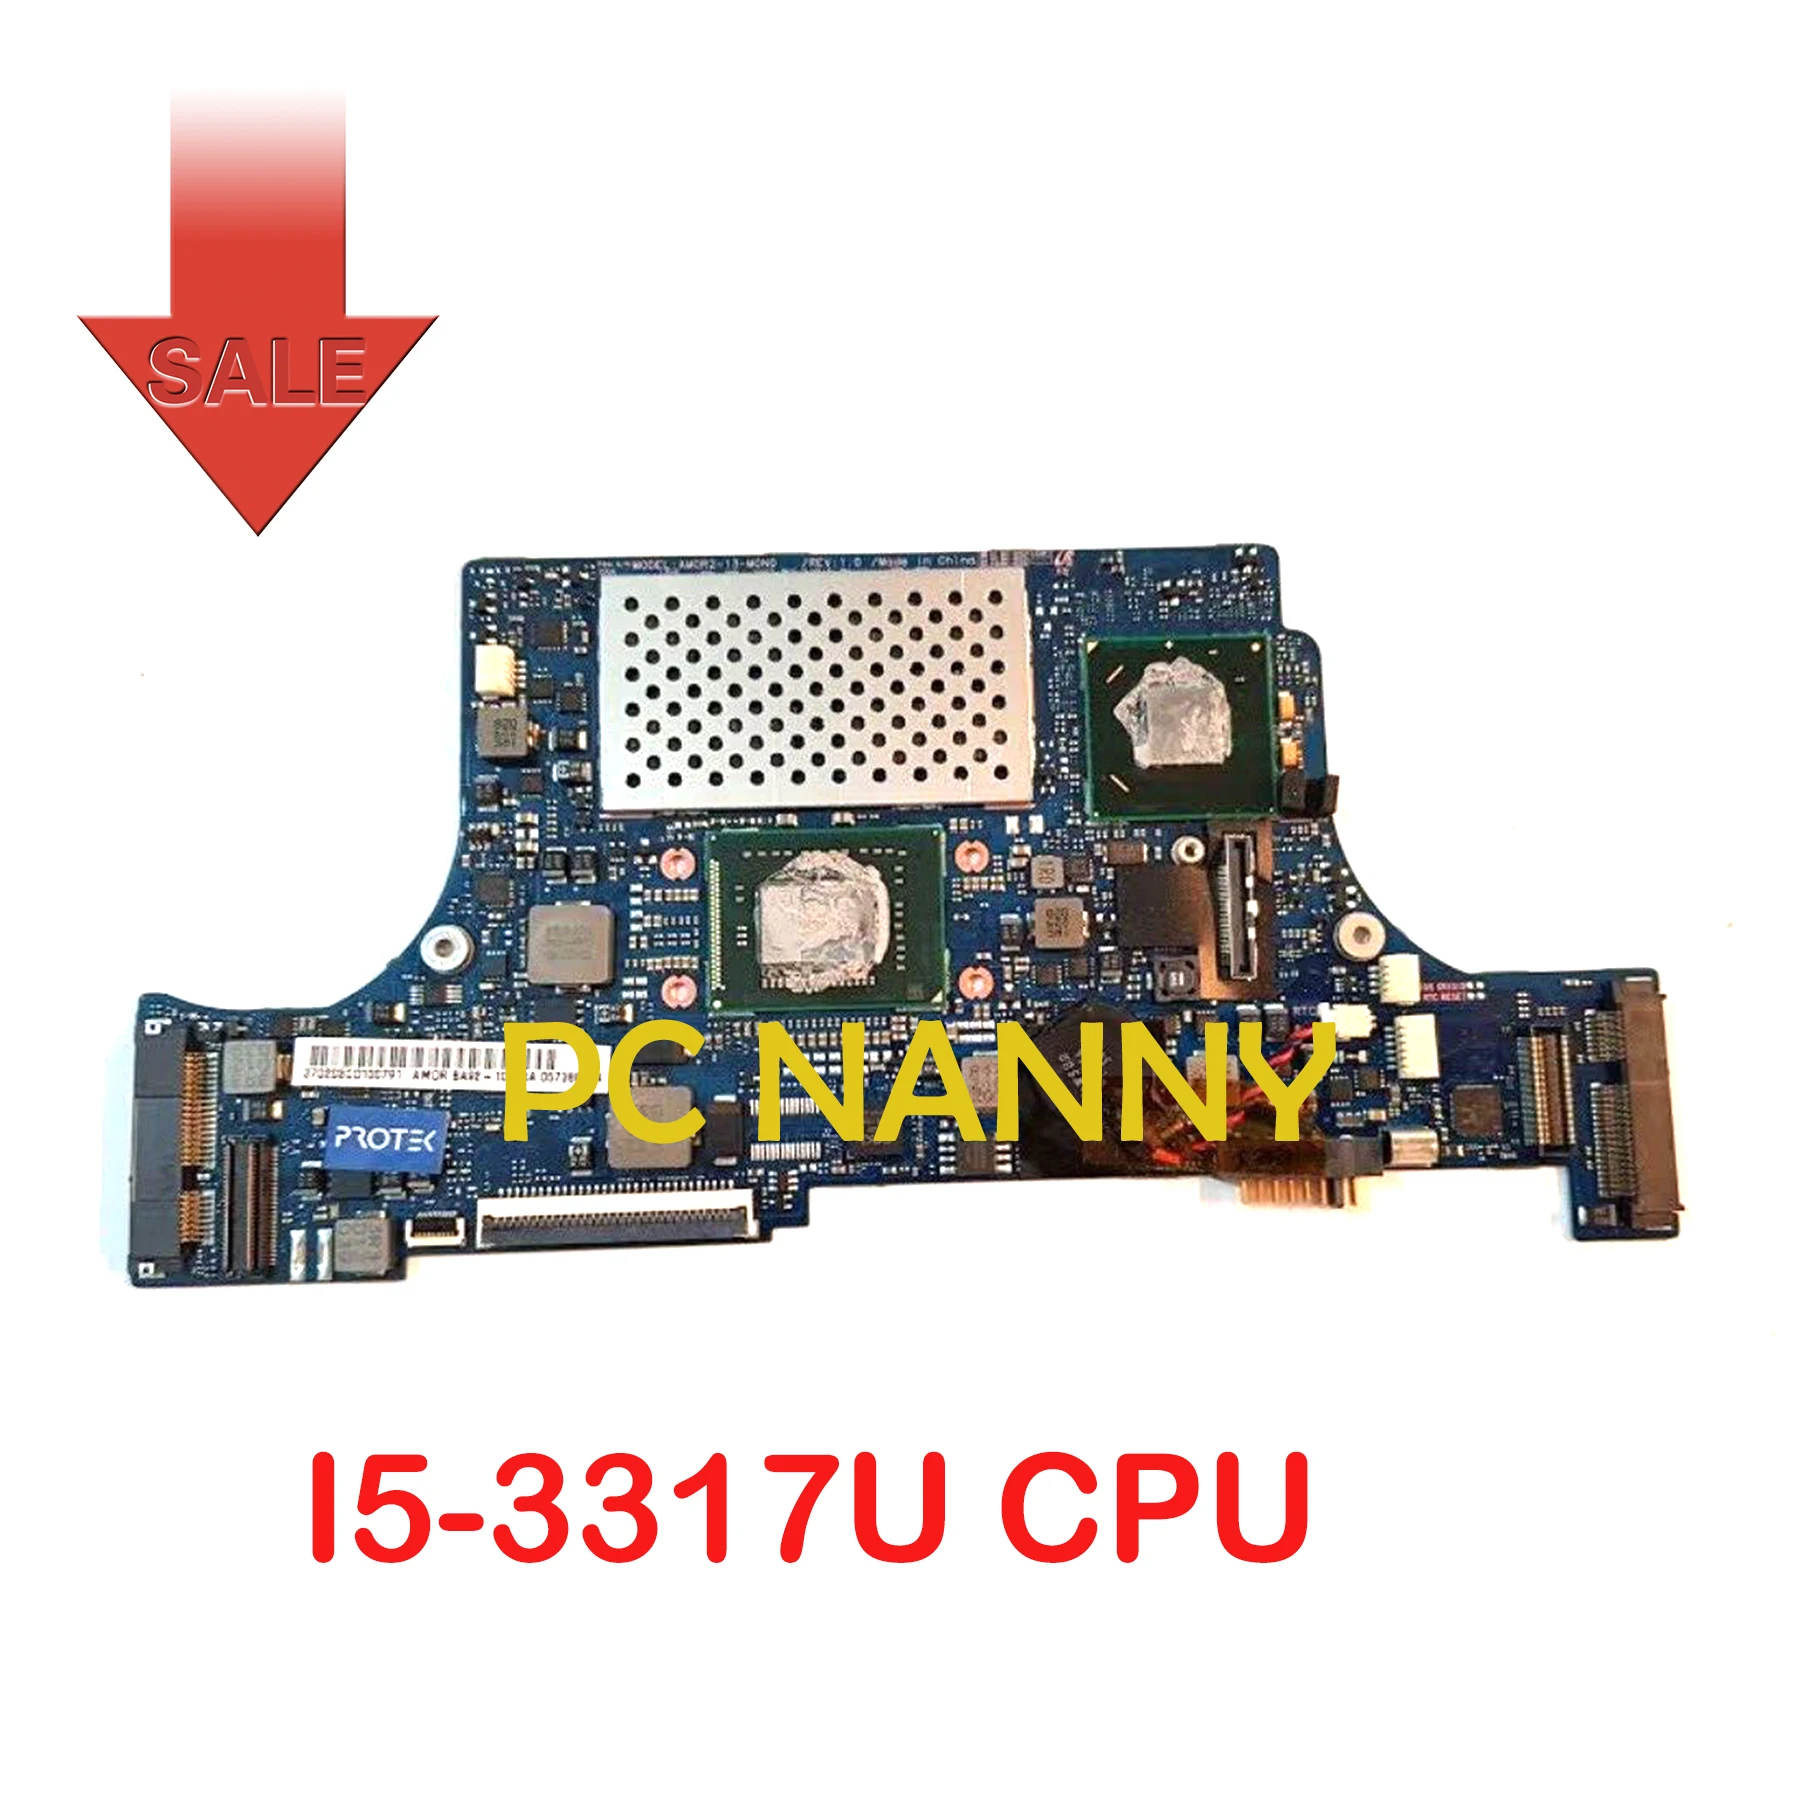   PCNANNY   Samsung NP900X 900X3D NP900X3D,  